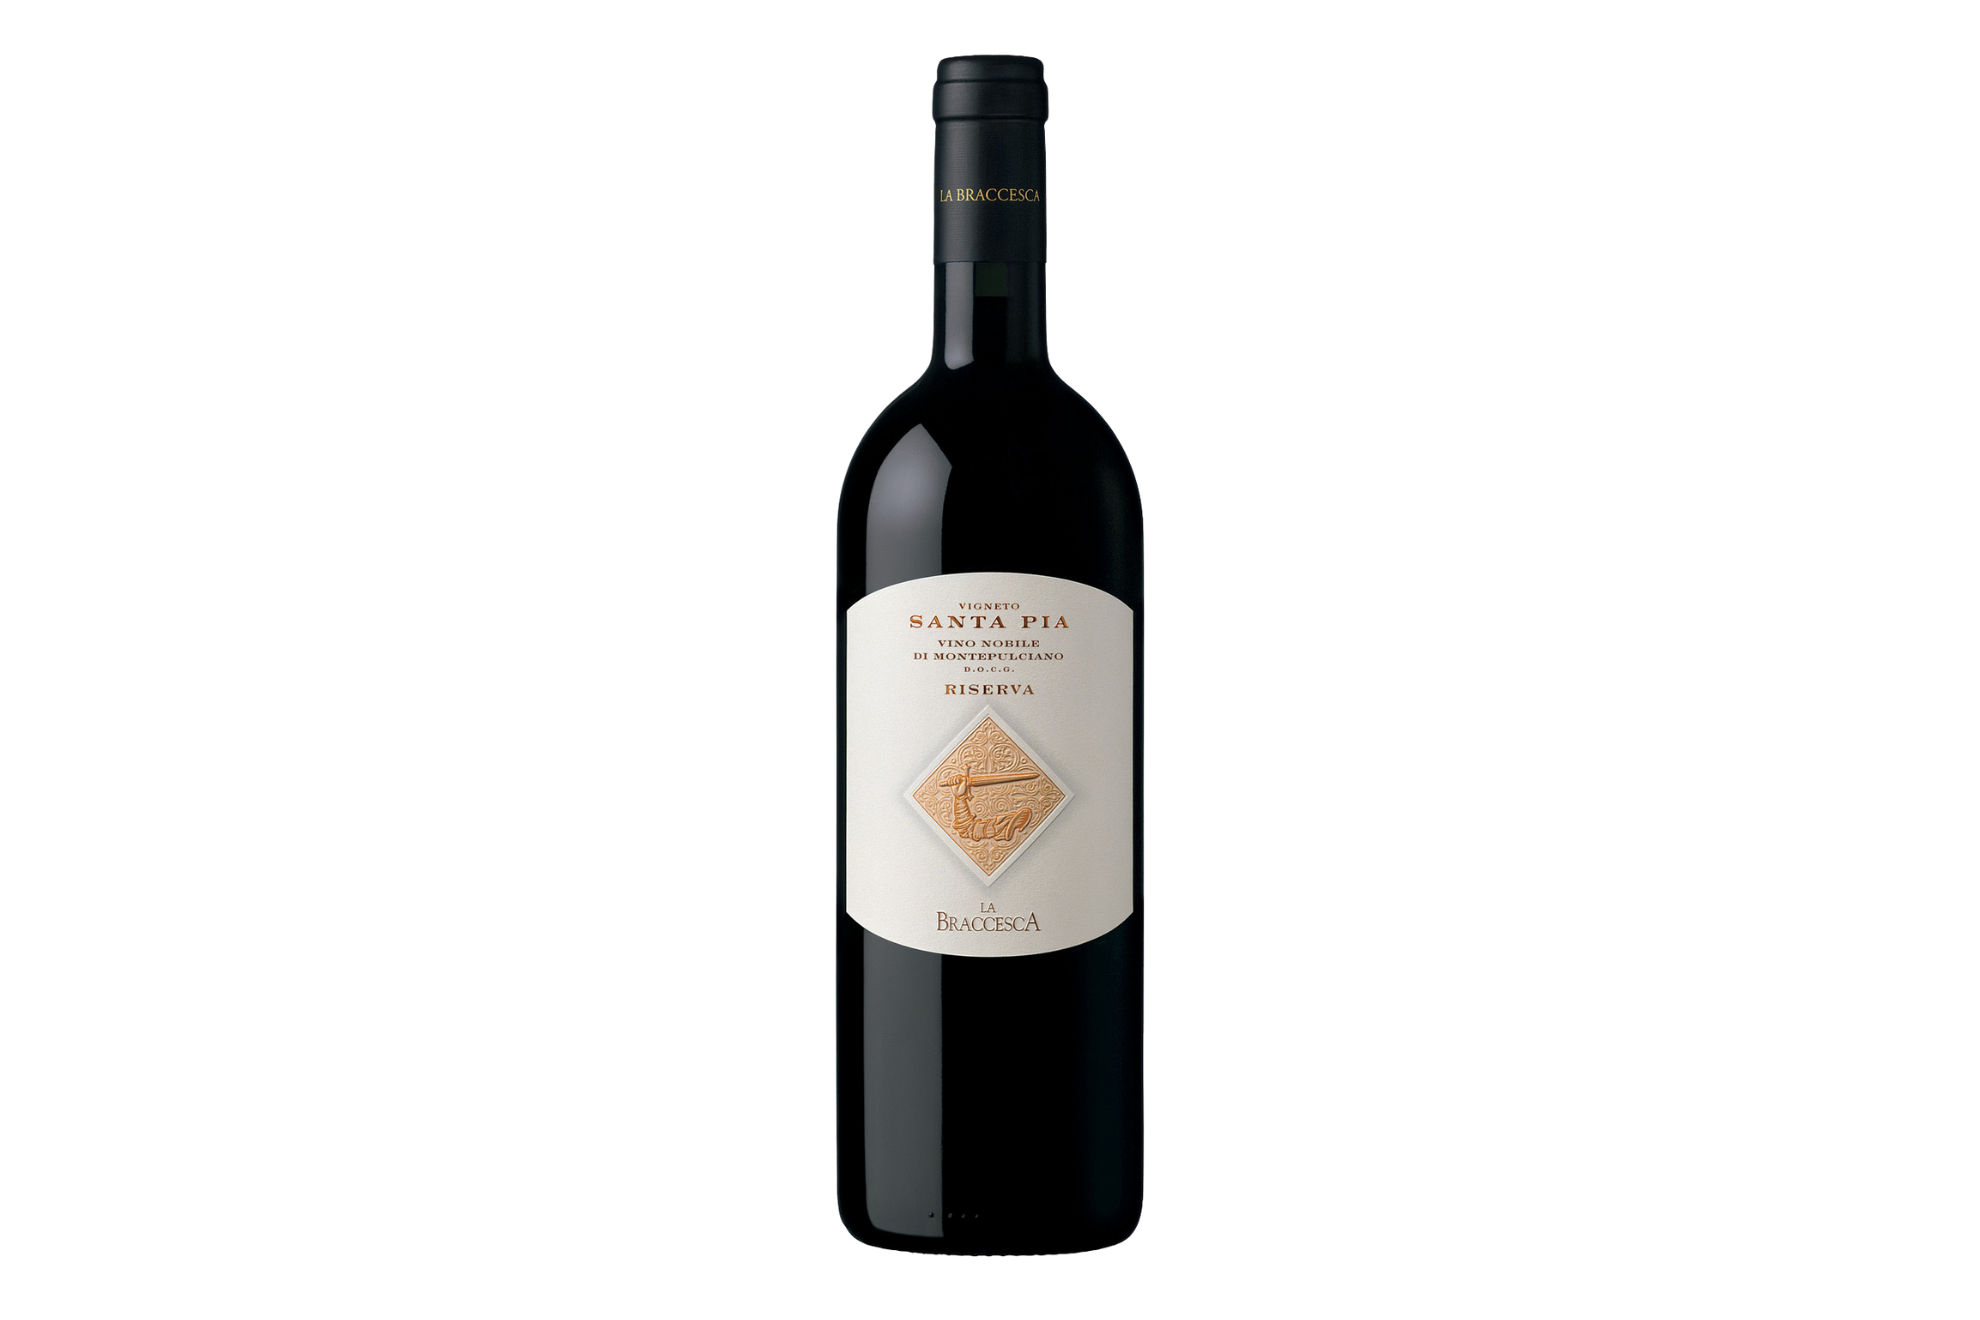 La Braccesca Vigneto Santa Pia Riserva Vino Nobile di Montepulciano 2019